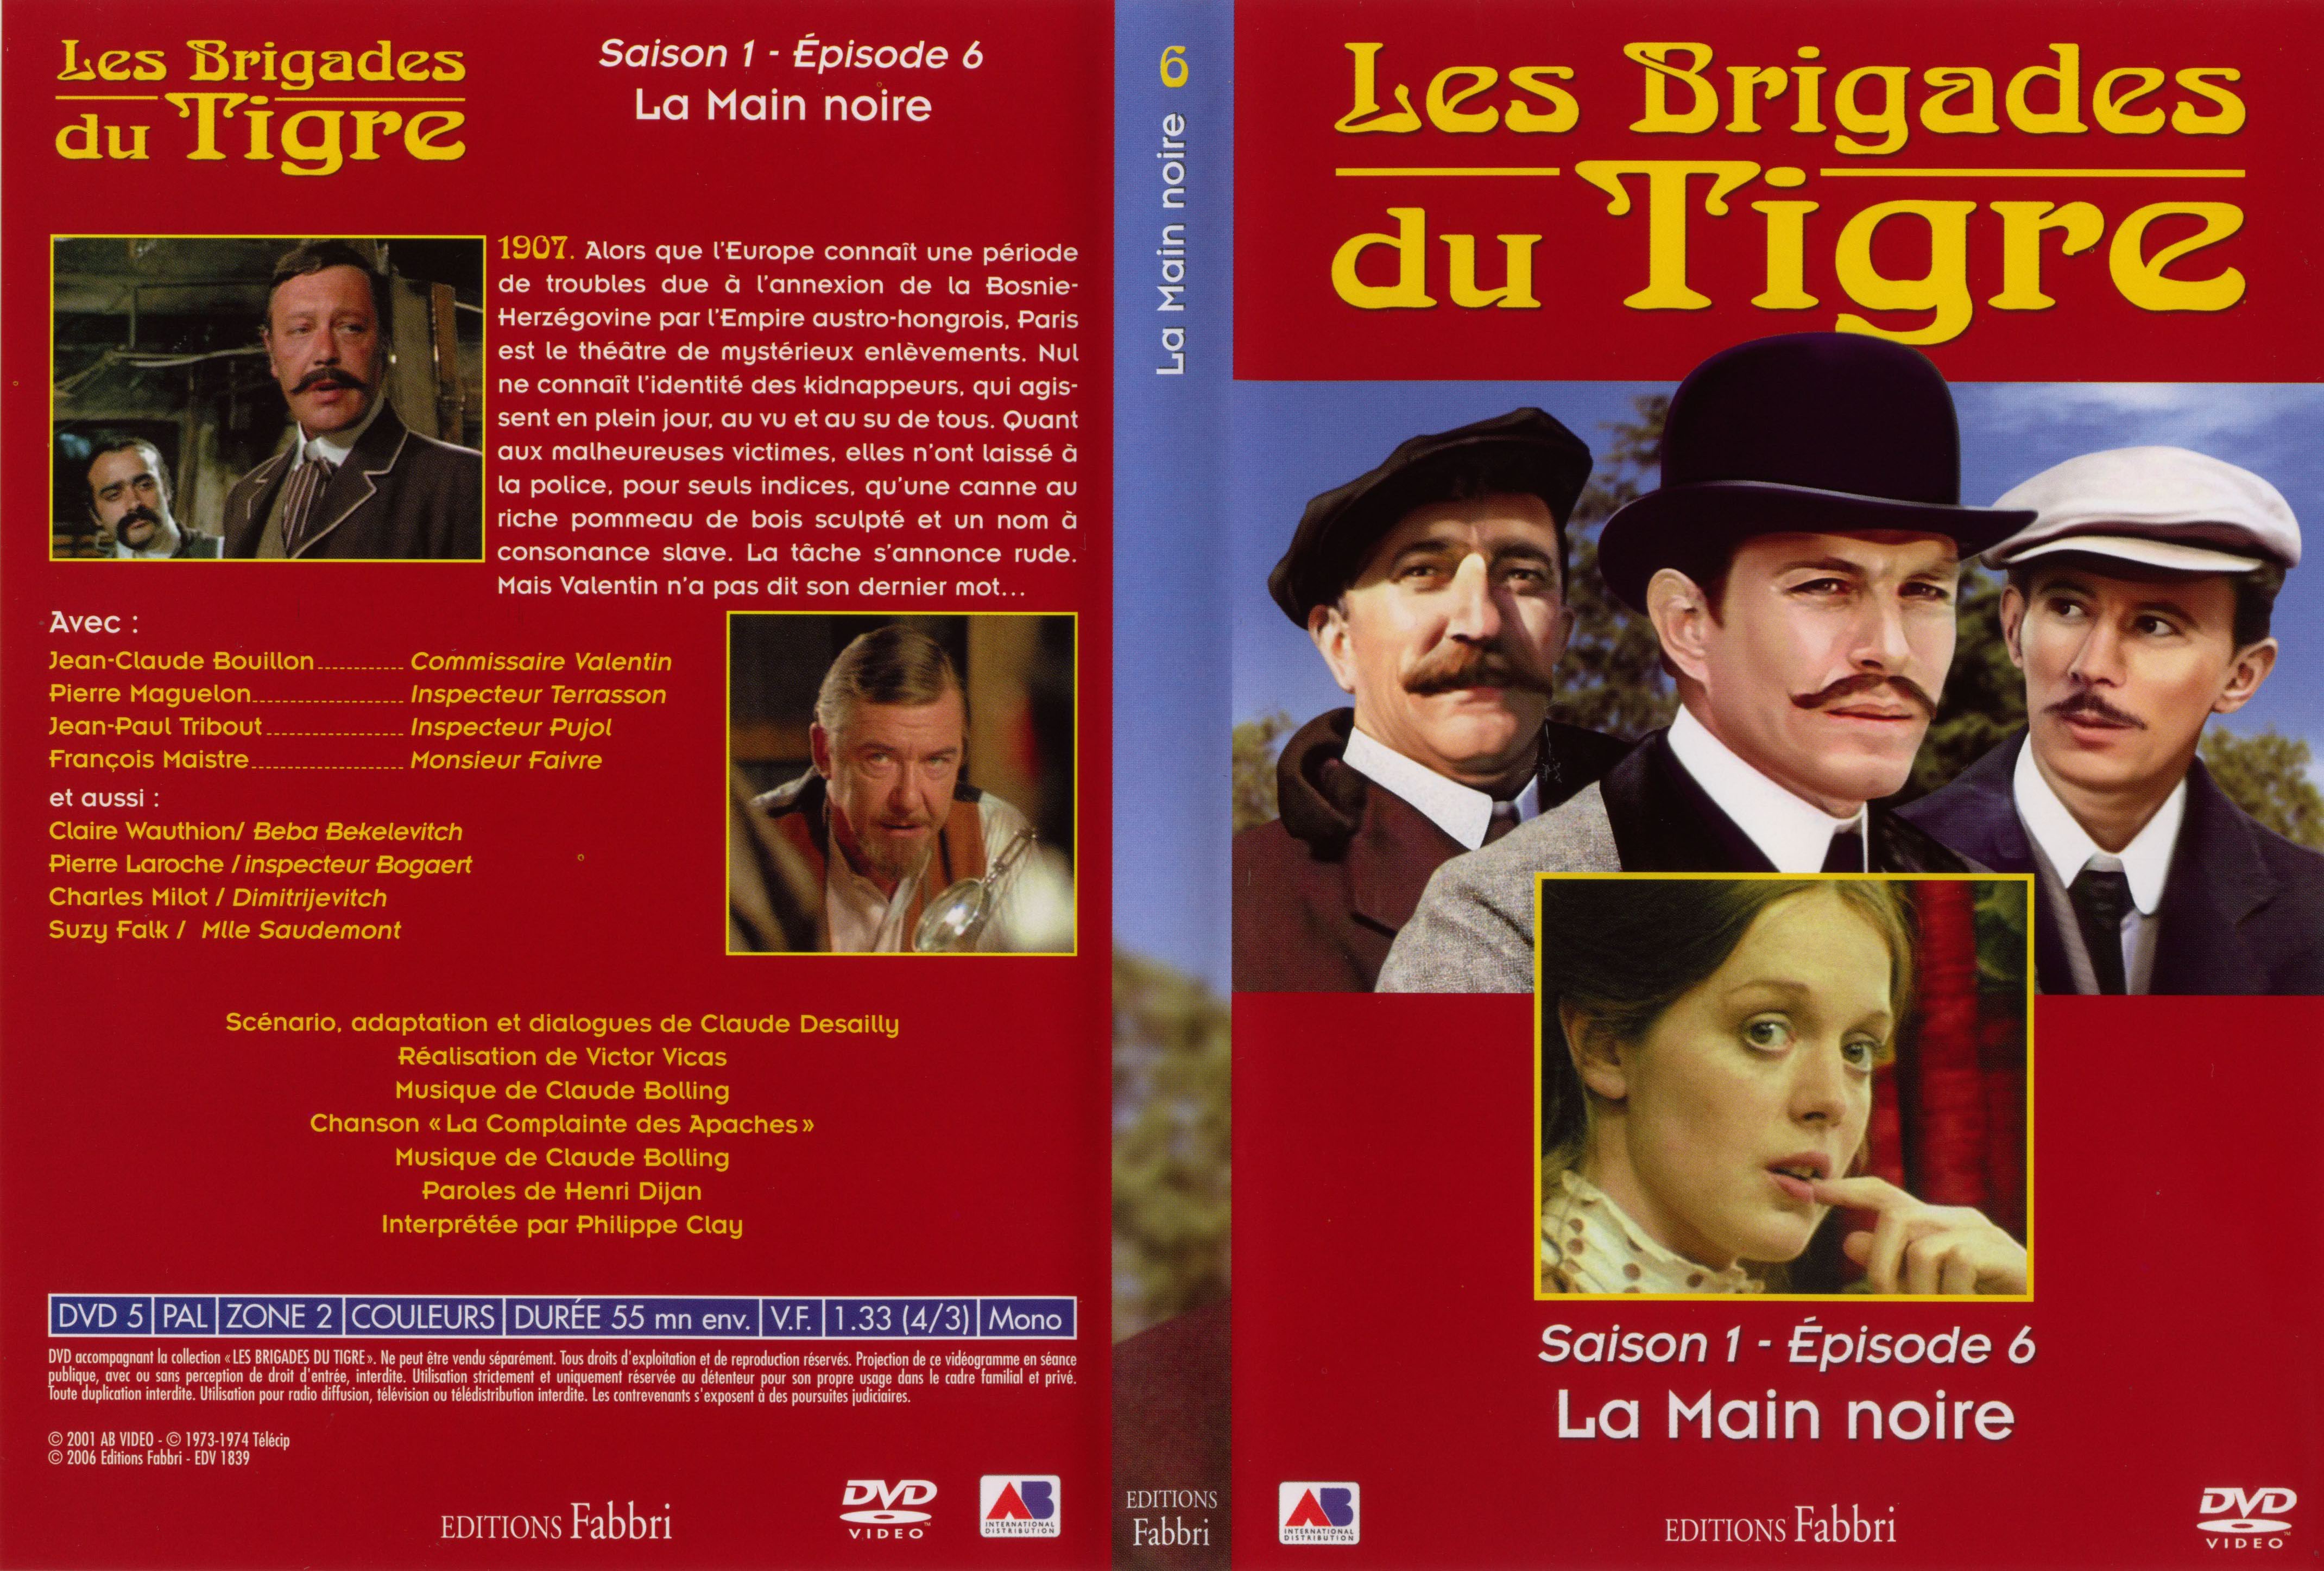 Jaquette DVD Les brigades du tigre saison 1 épisode 6